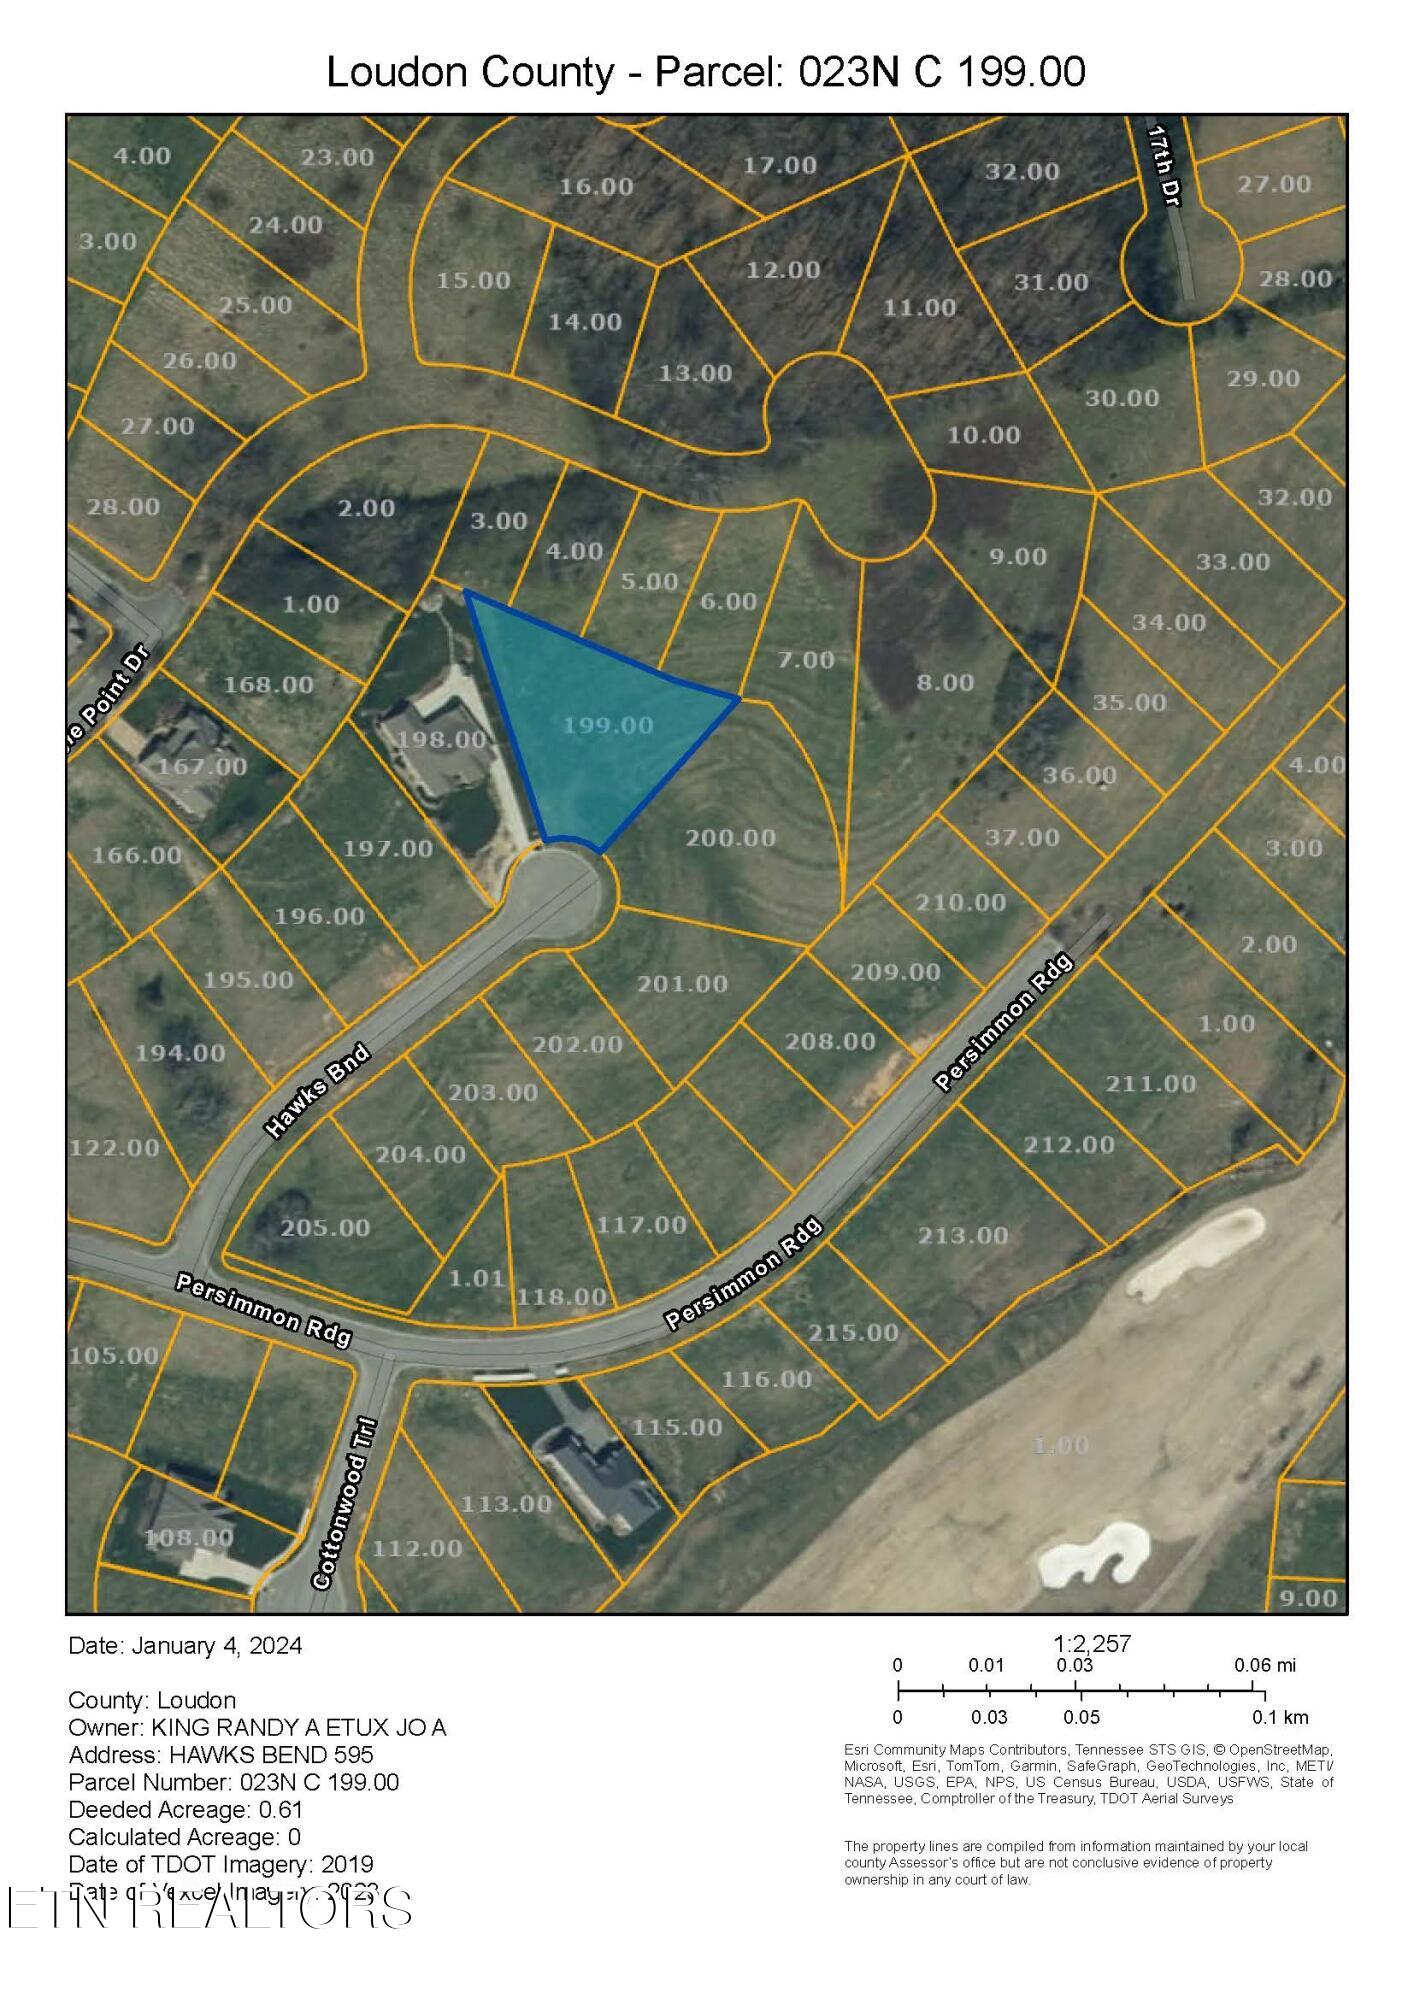 595 Hawks Bend plot map